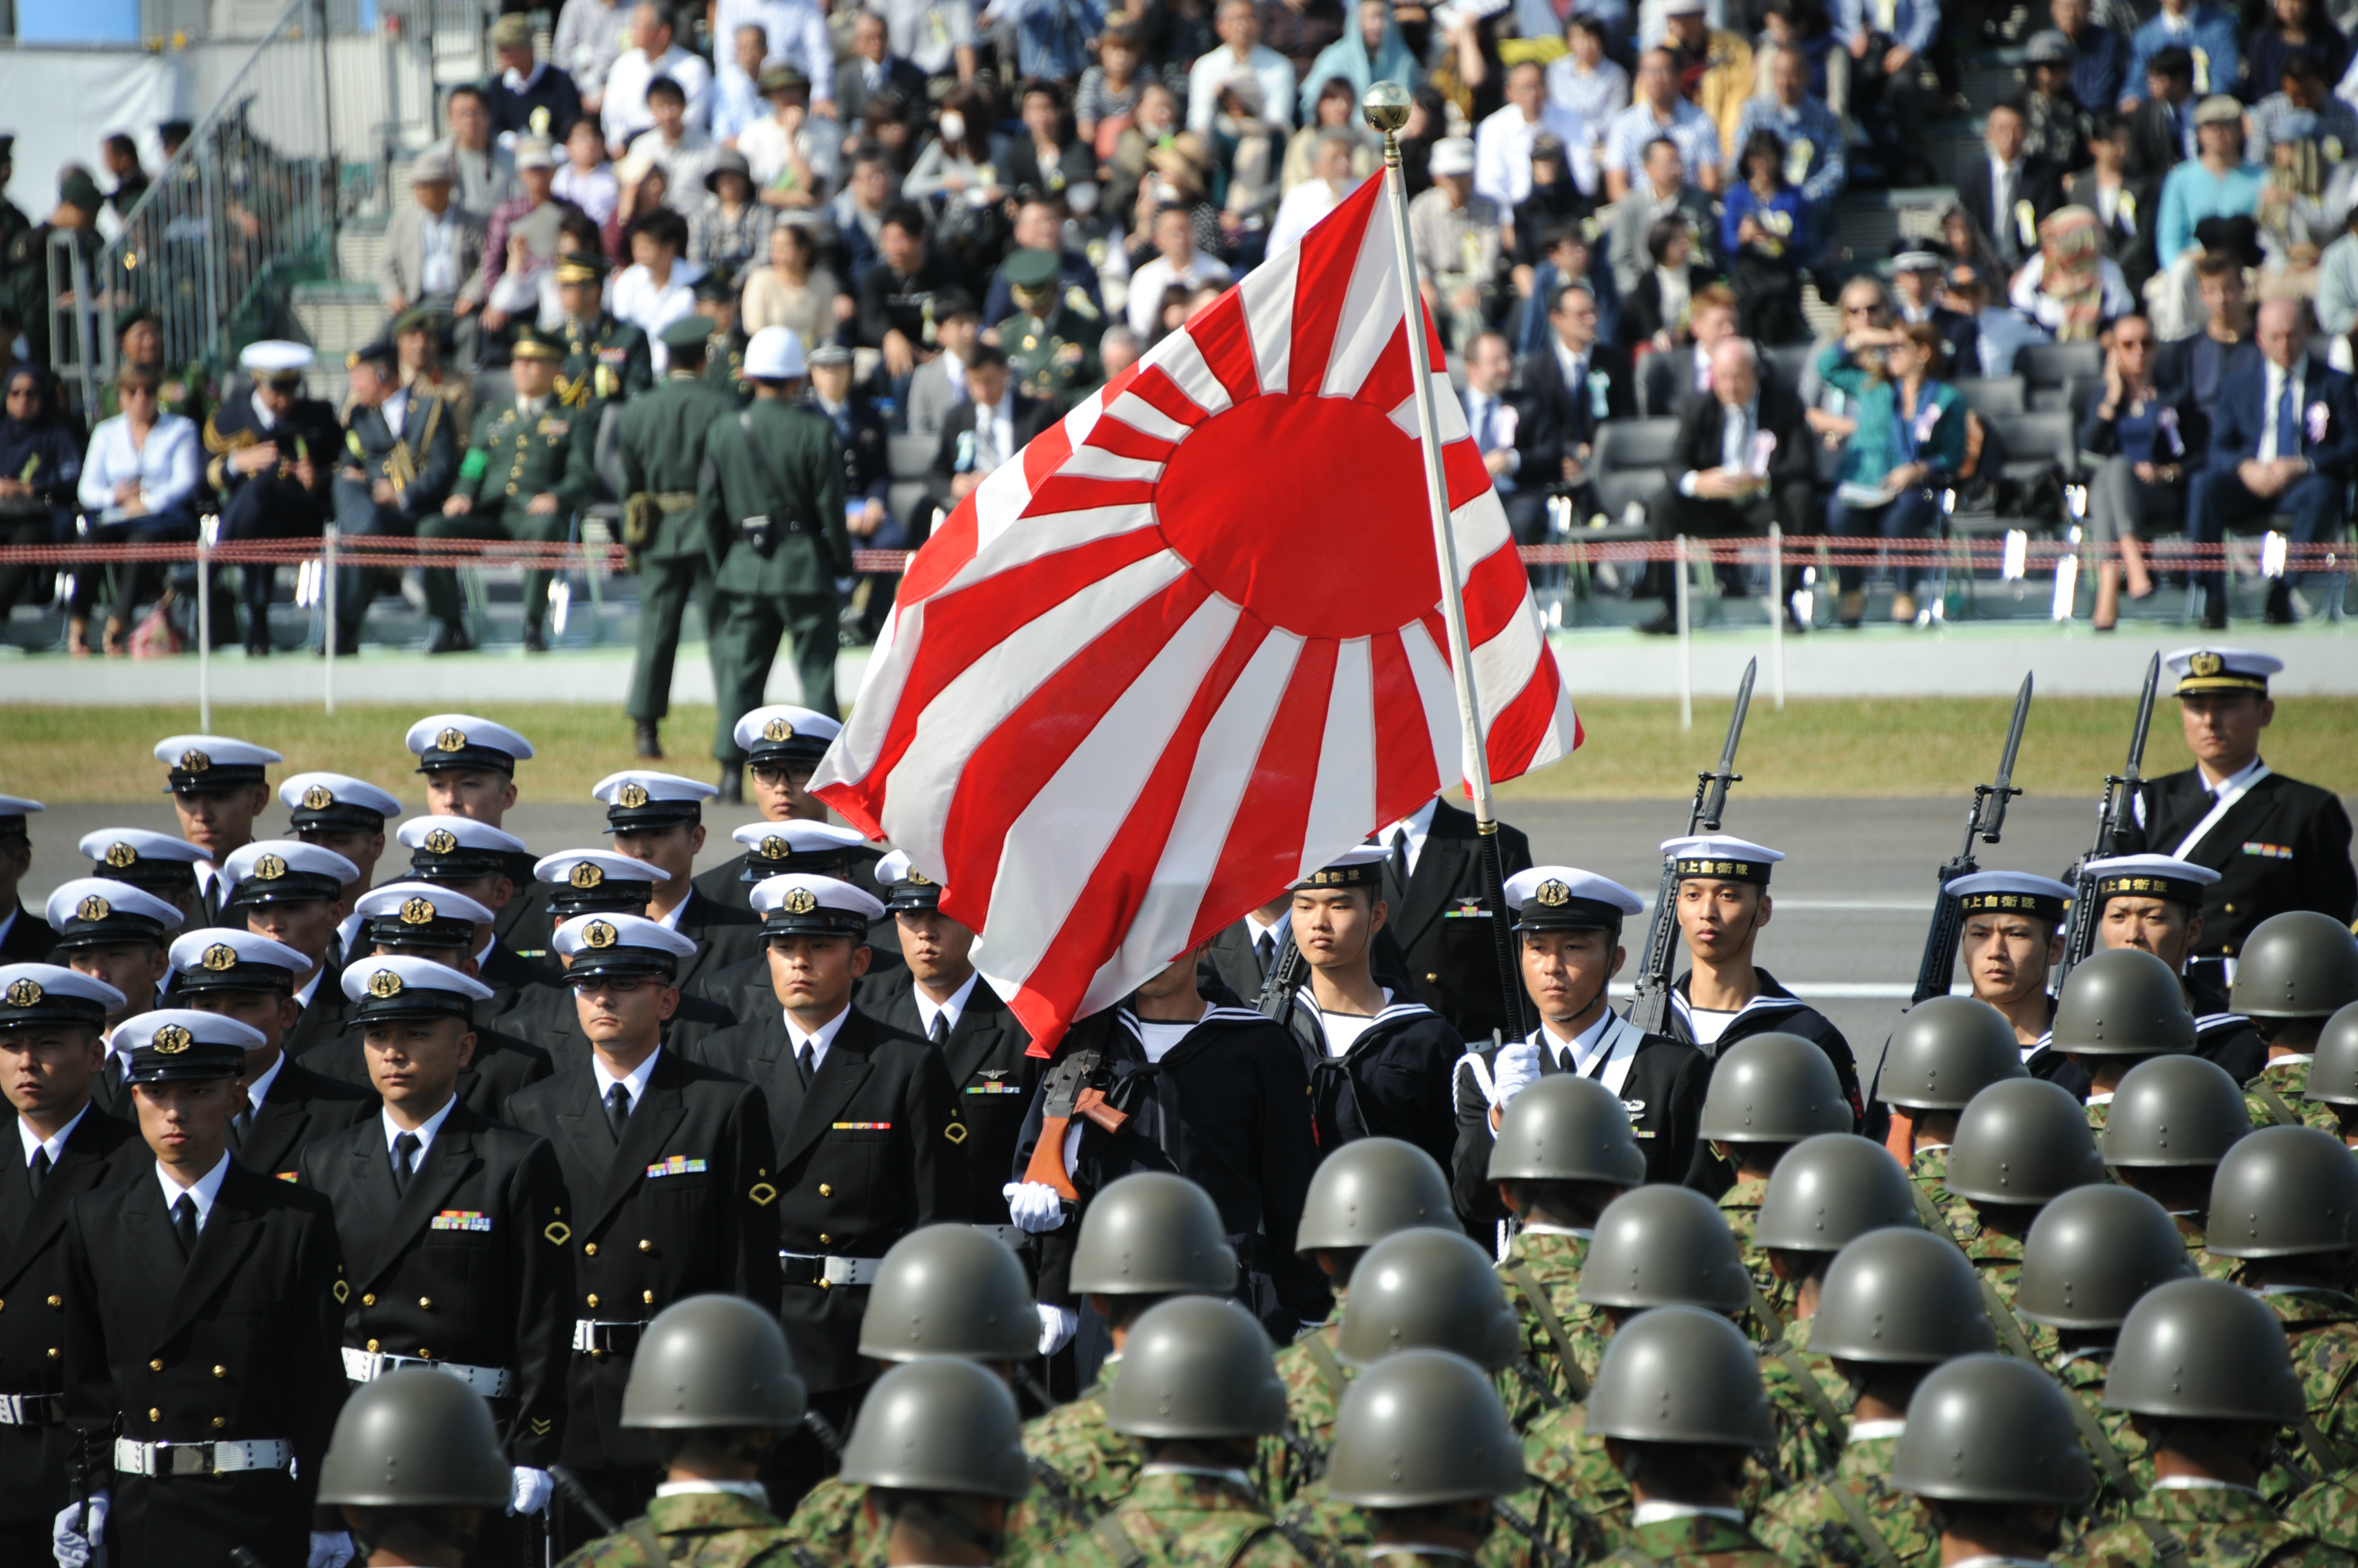 日本向韩国人解释 旭日旗 效果难料